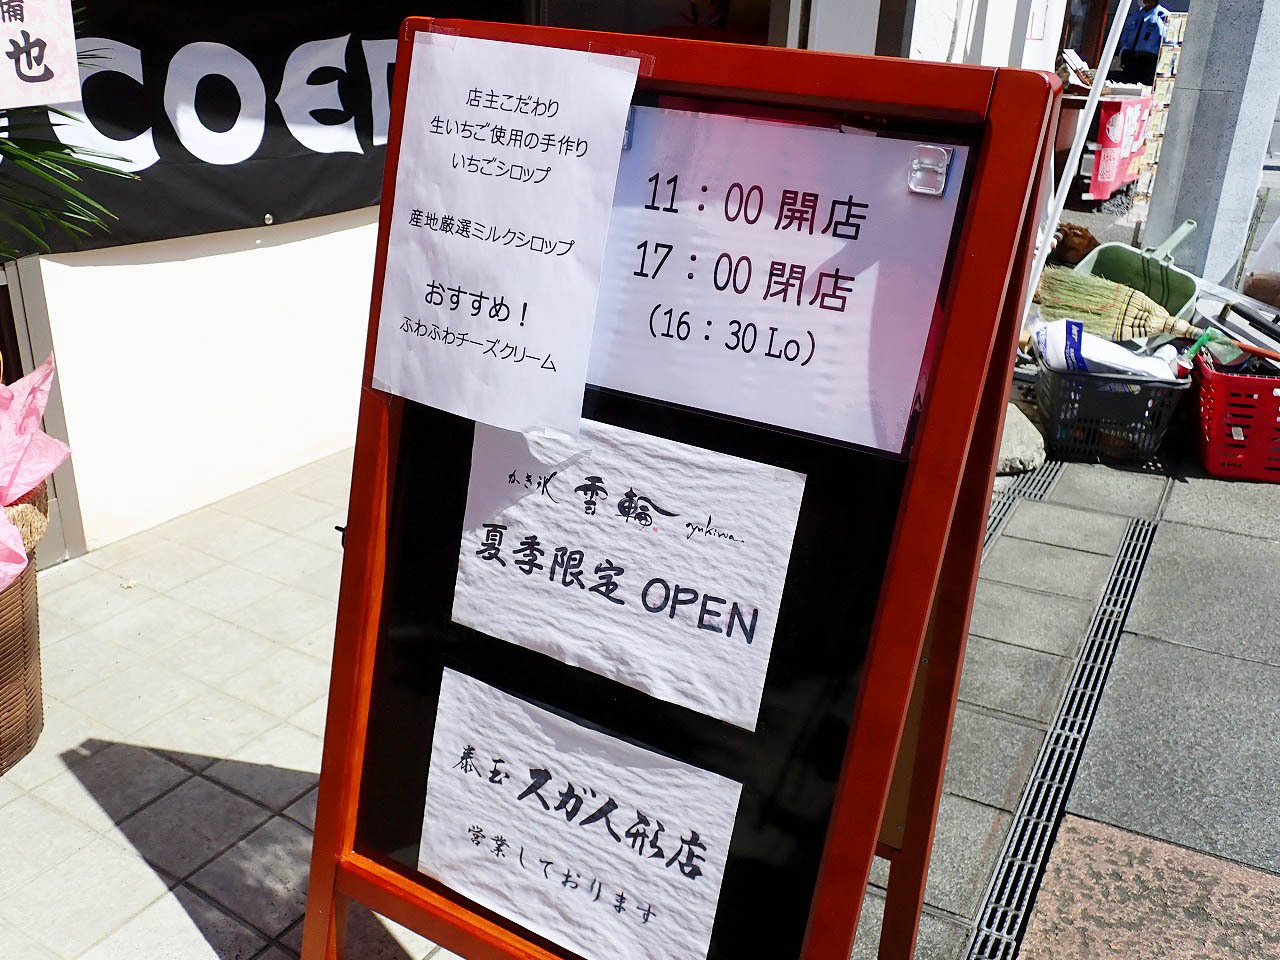 「かき氷 雪輪 yukiwa」は夏季限定のオープンです